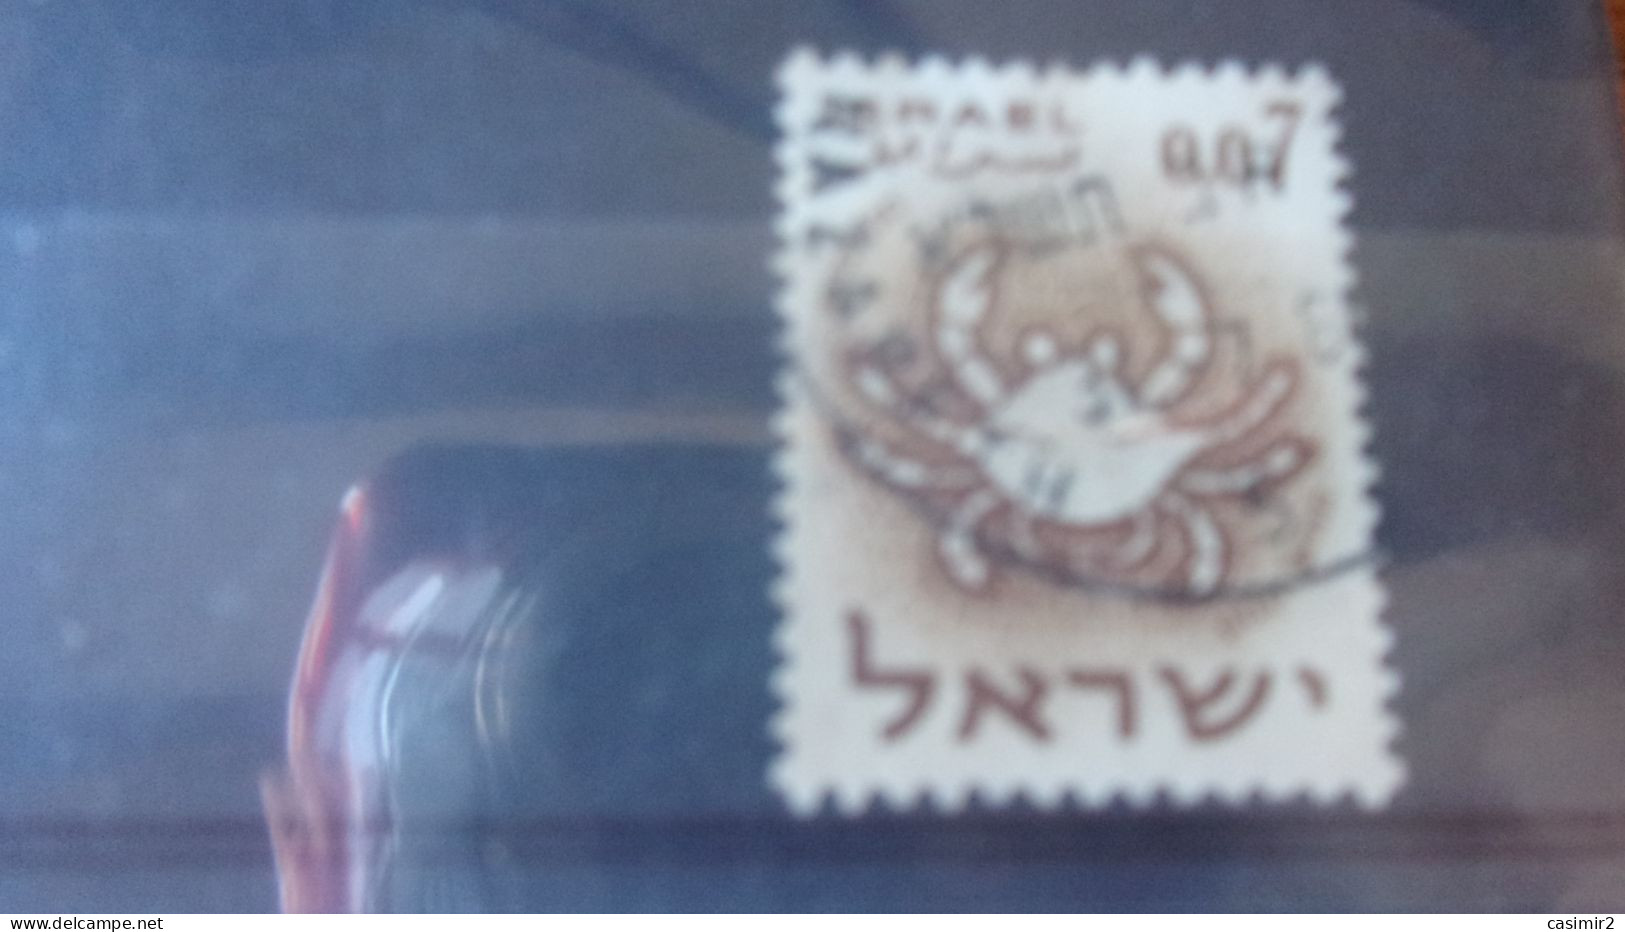 ISRAEL YVERT N° 189 - Usados (sin Tab)